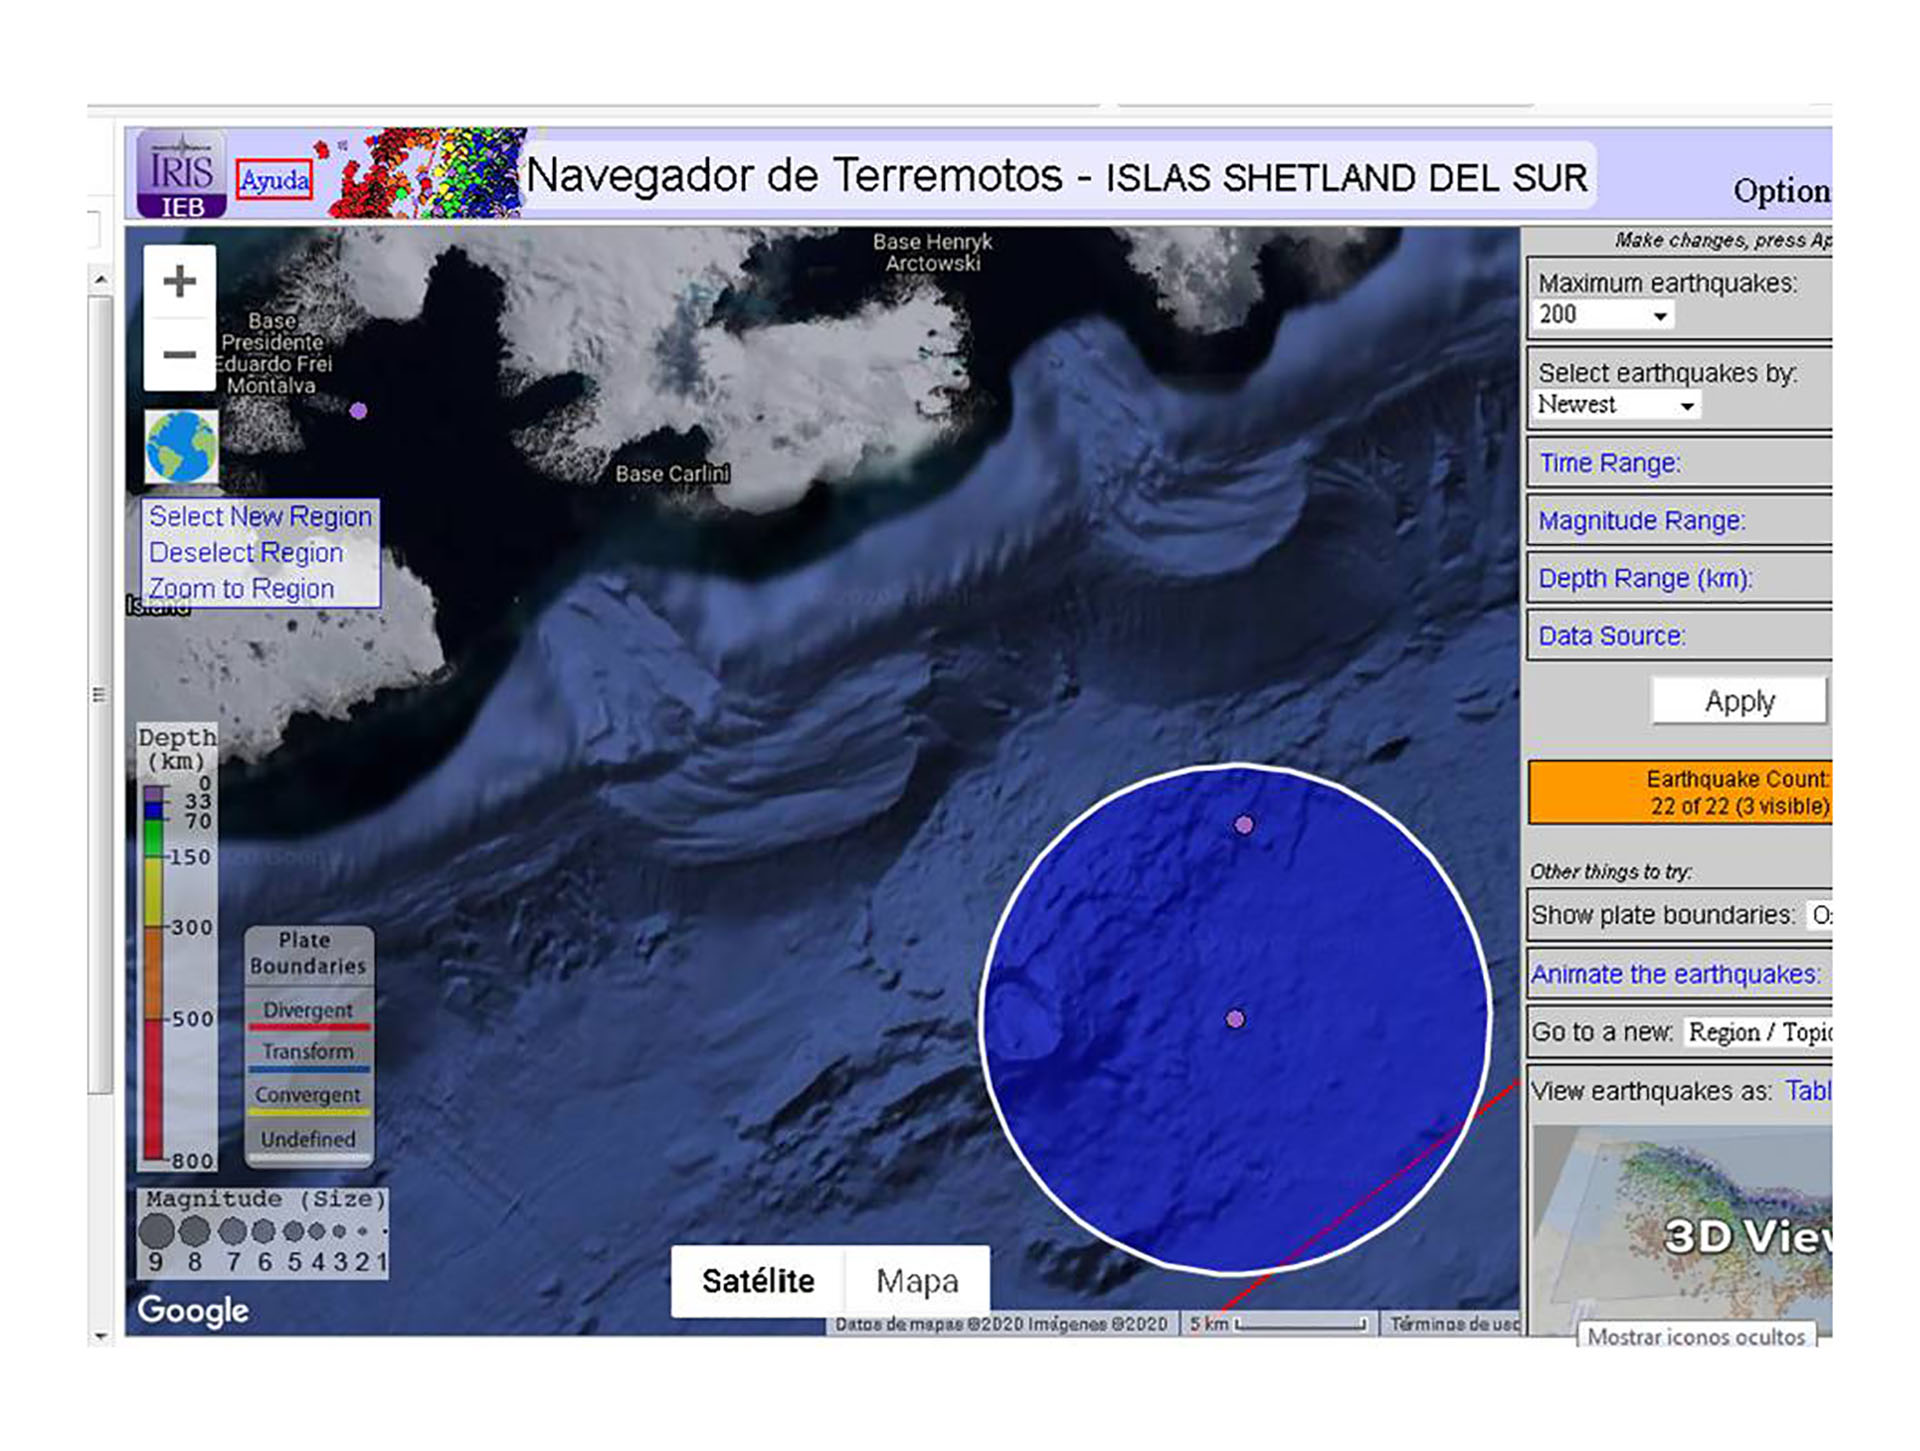 Un navegador de terremotos con información sismográfica de las Islas Shetland del Sur, donde se encuentra emplazada la estación científica Carlini